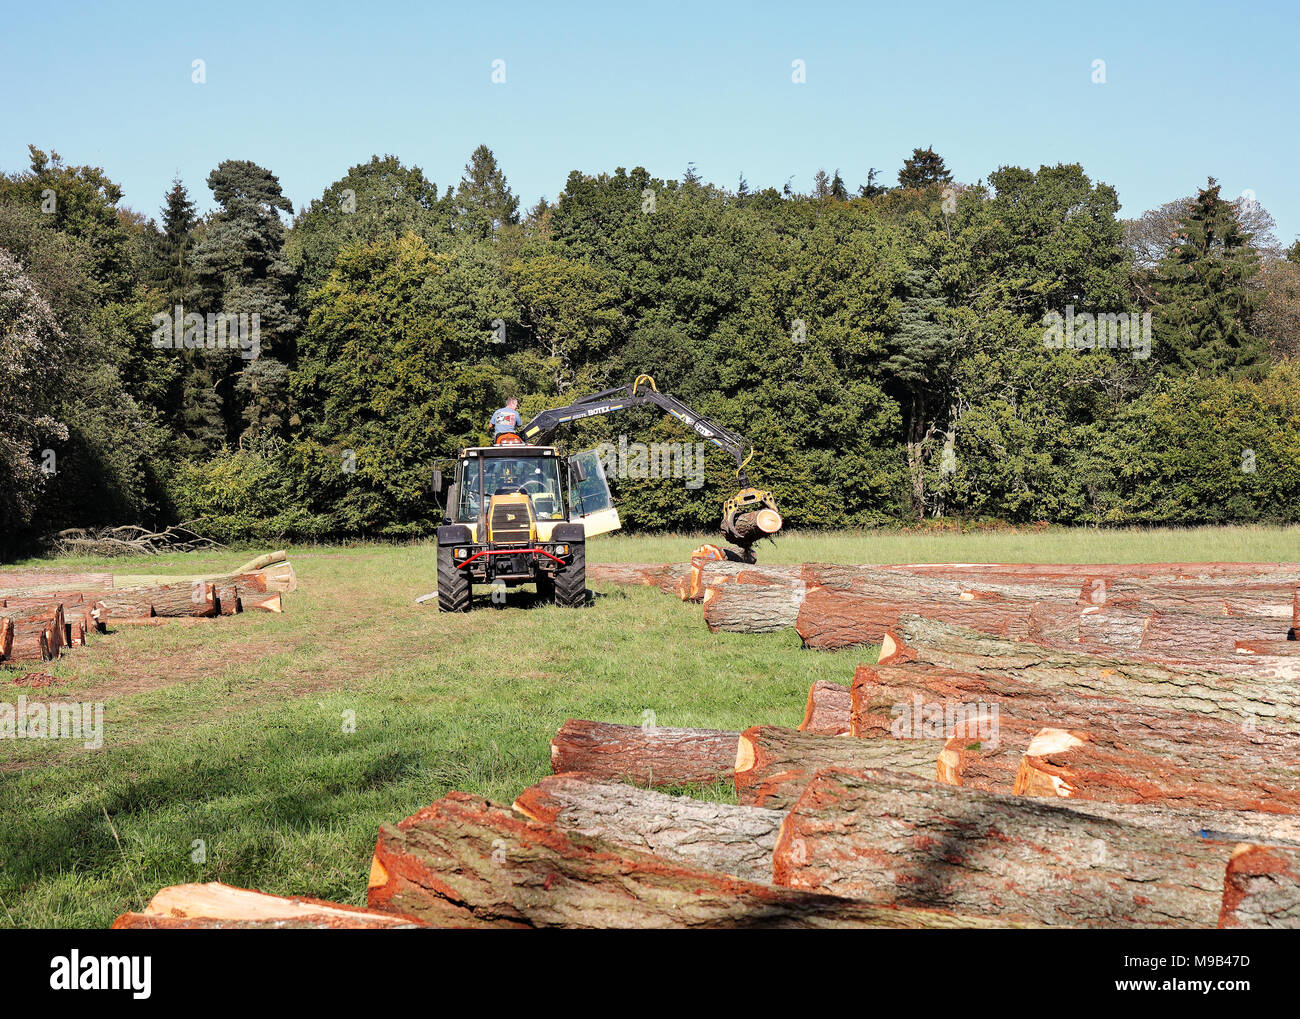 Arbeiter auf einem Traktor anheben Schnittholz mit einer mechanischen Greifer Stockfoto